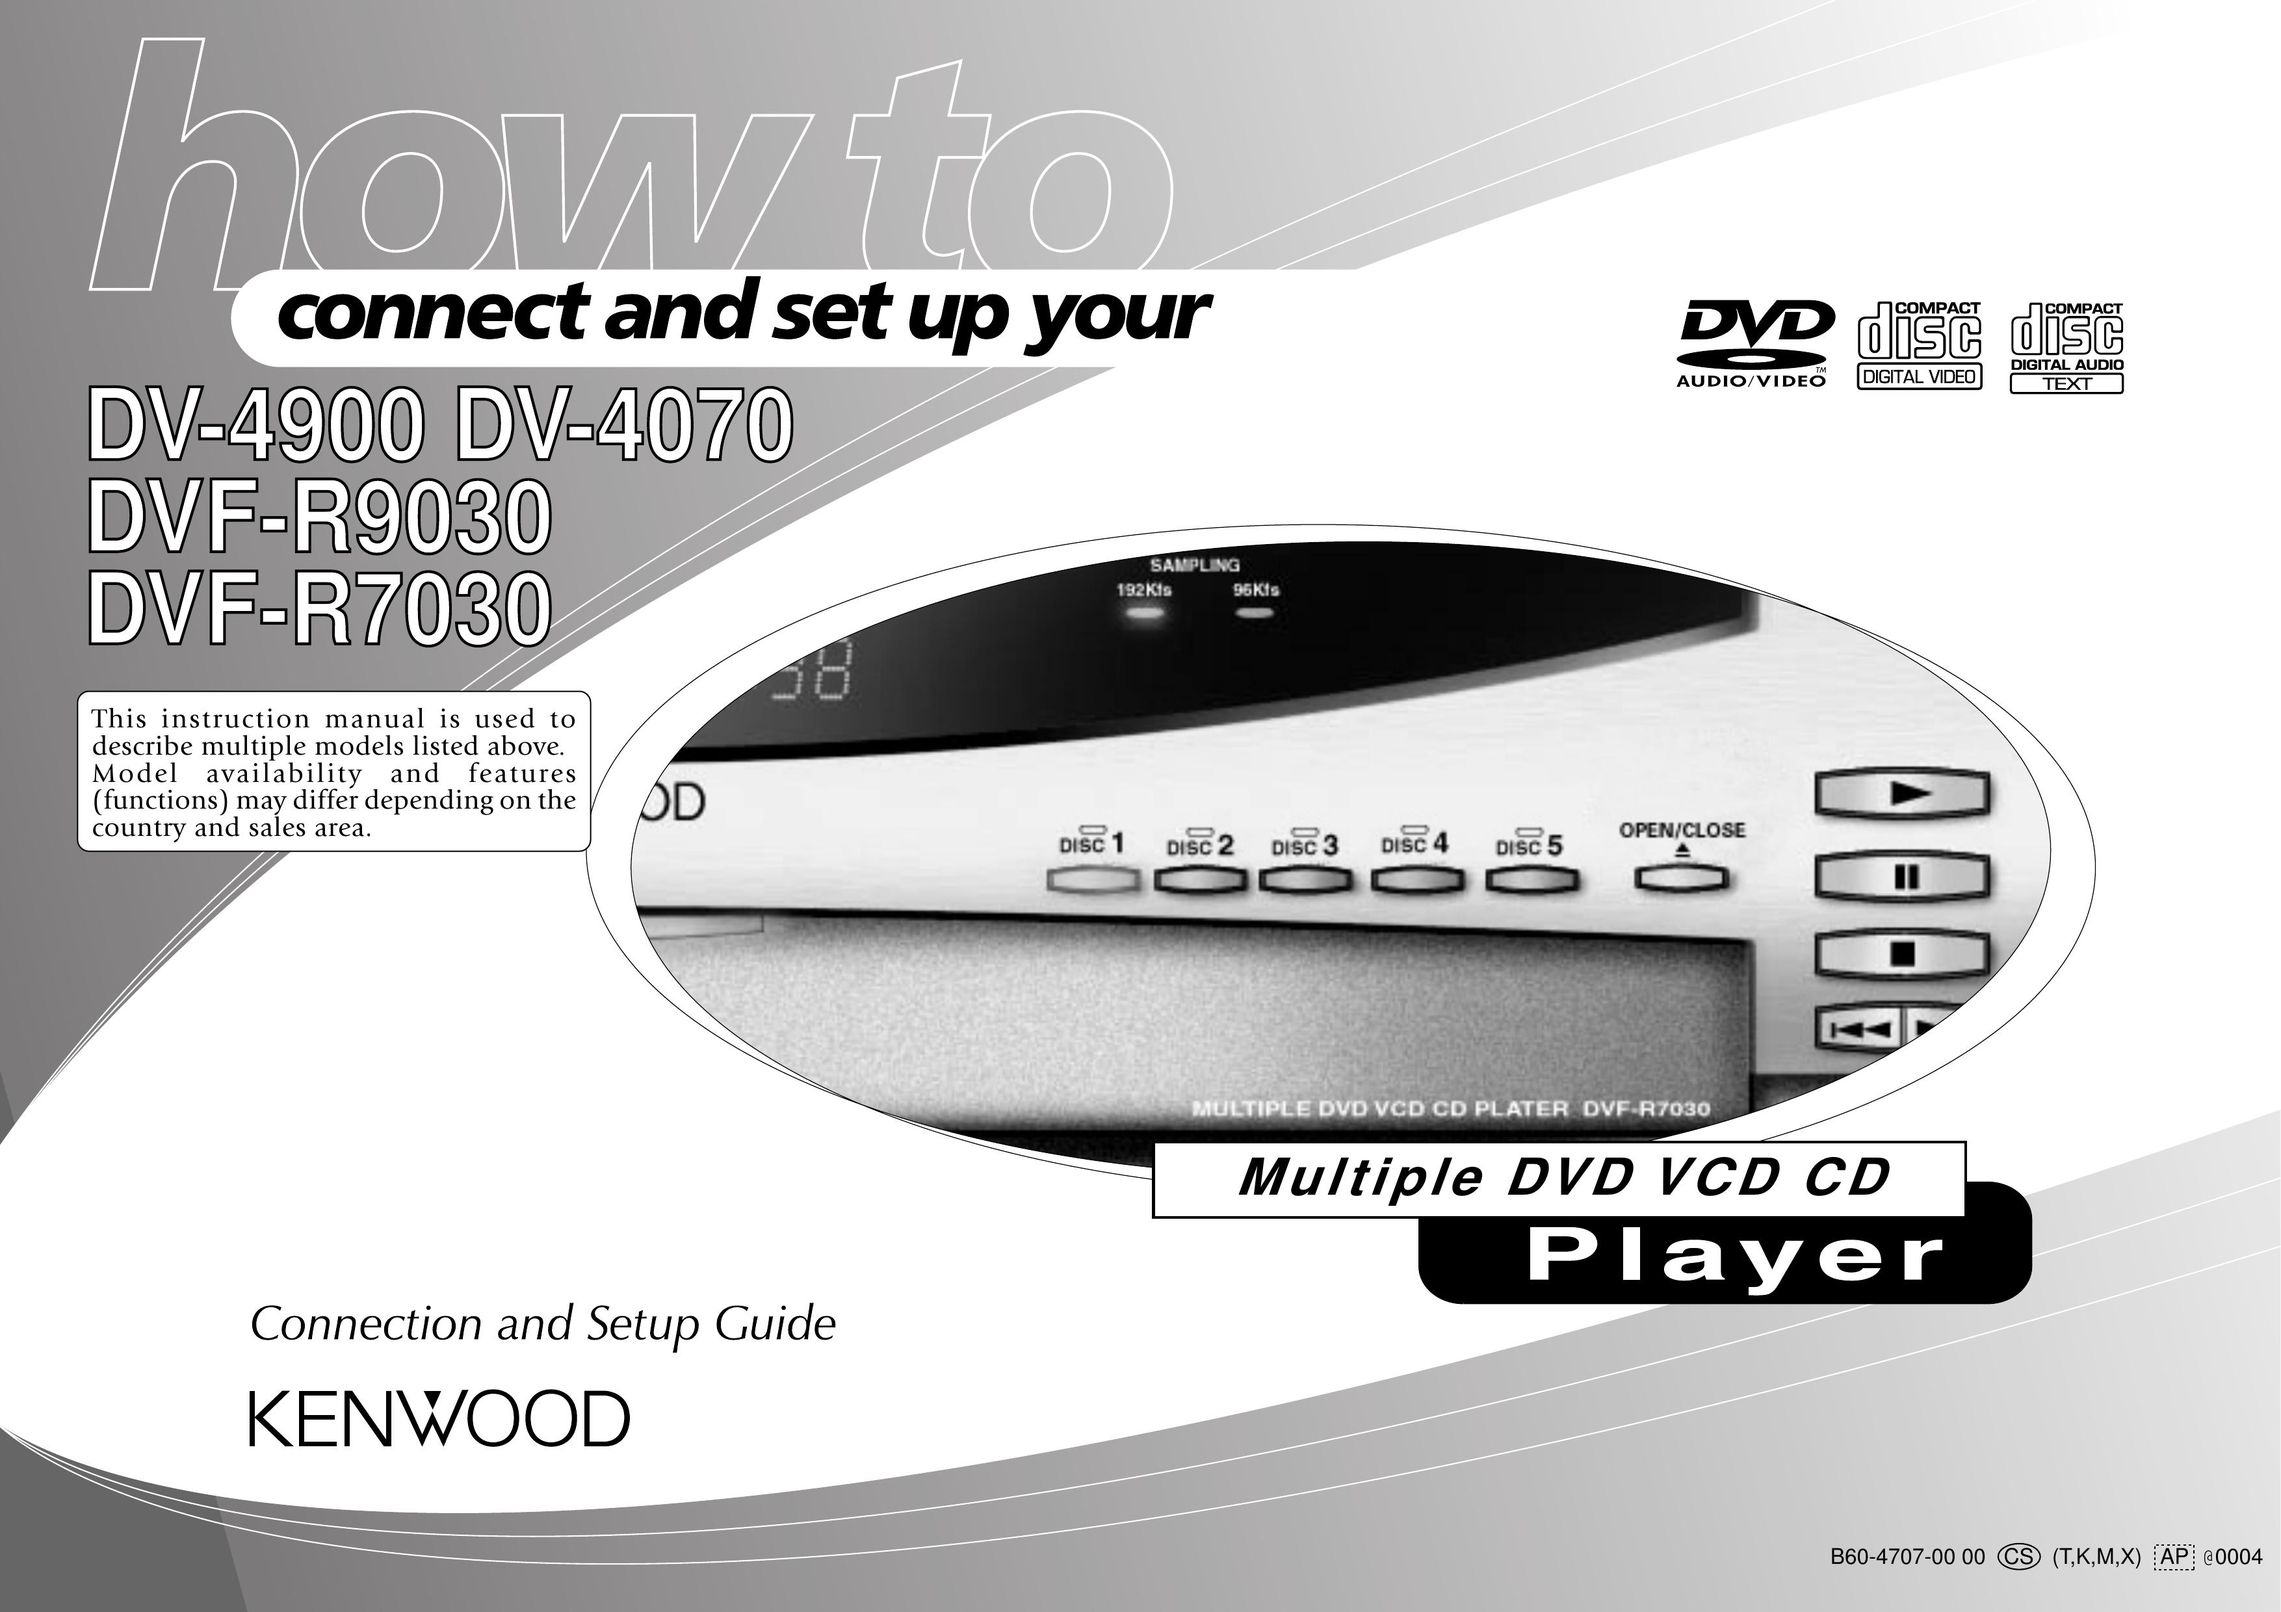 Kenwood DVF-R9030 DVD Player User Manual